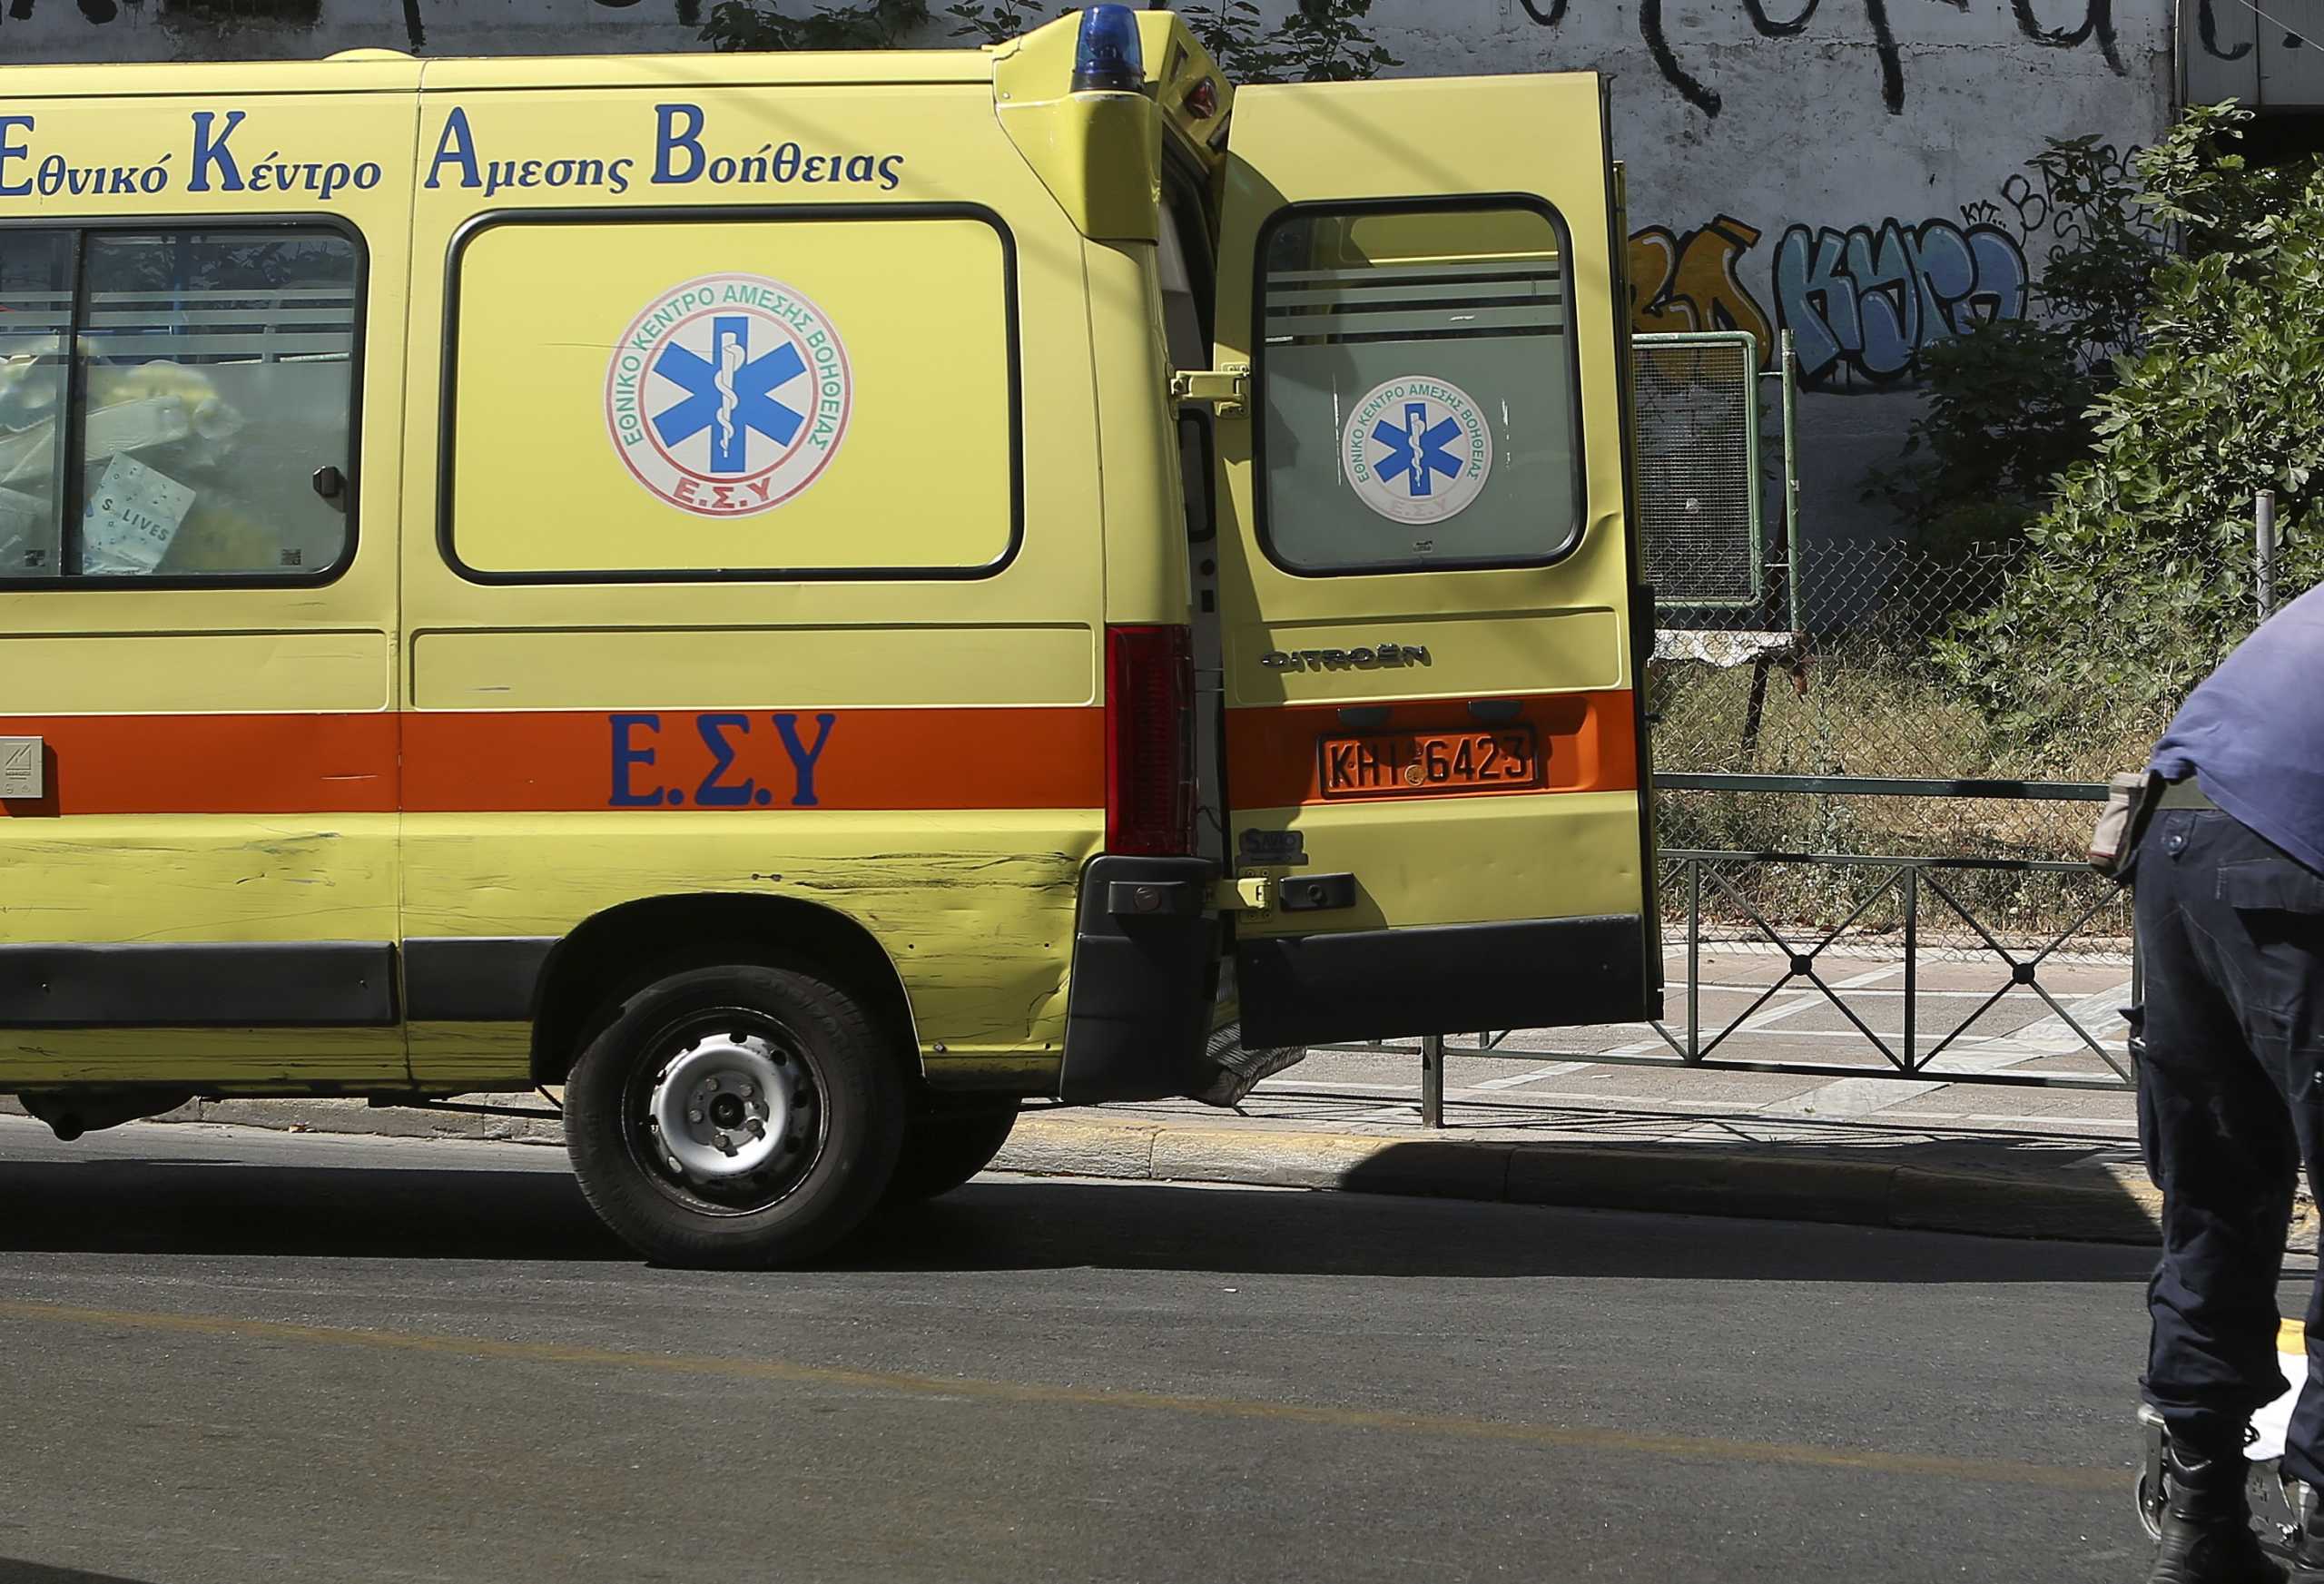 Θεσσαλονίκη: Πτώση θανάτου από ταράτσα 4όροφης πολυκατοικίας! Πάγωσαν οι αυτόπτες μάρτυρες